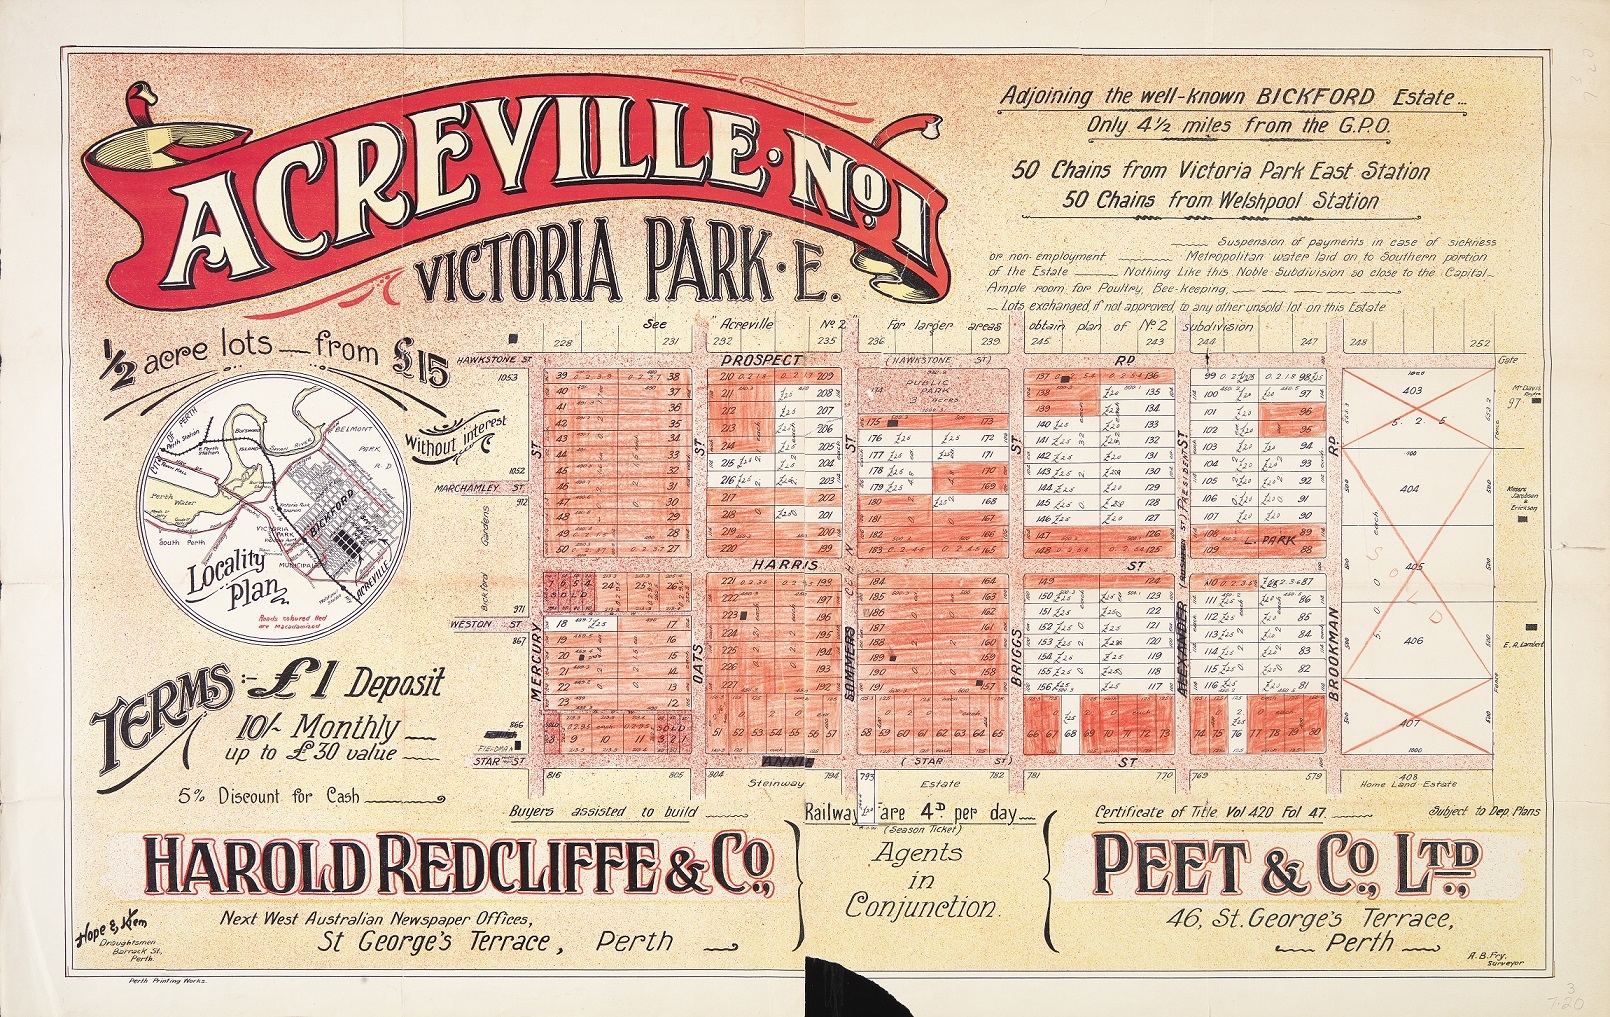 Acreville No. 1, Victoria Park E. Image